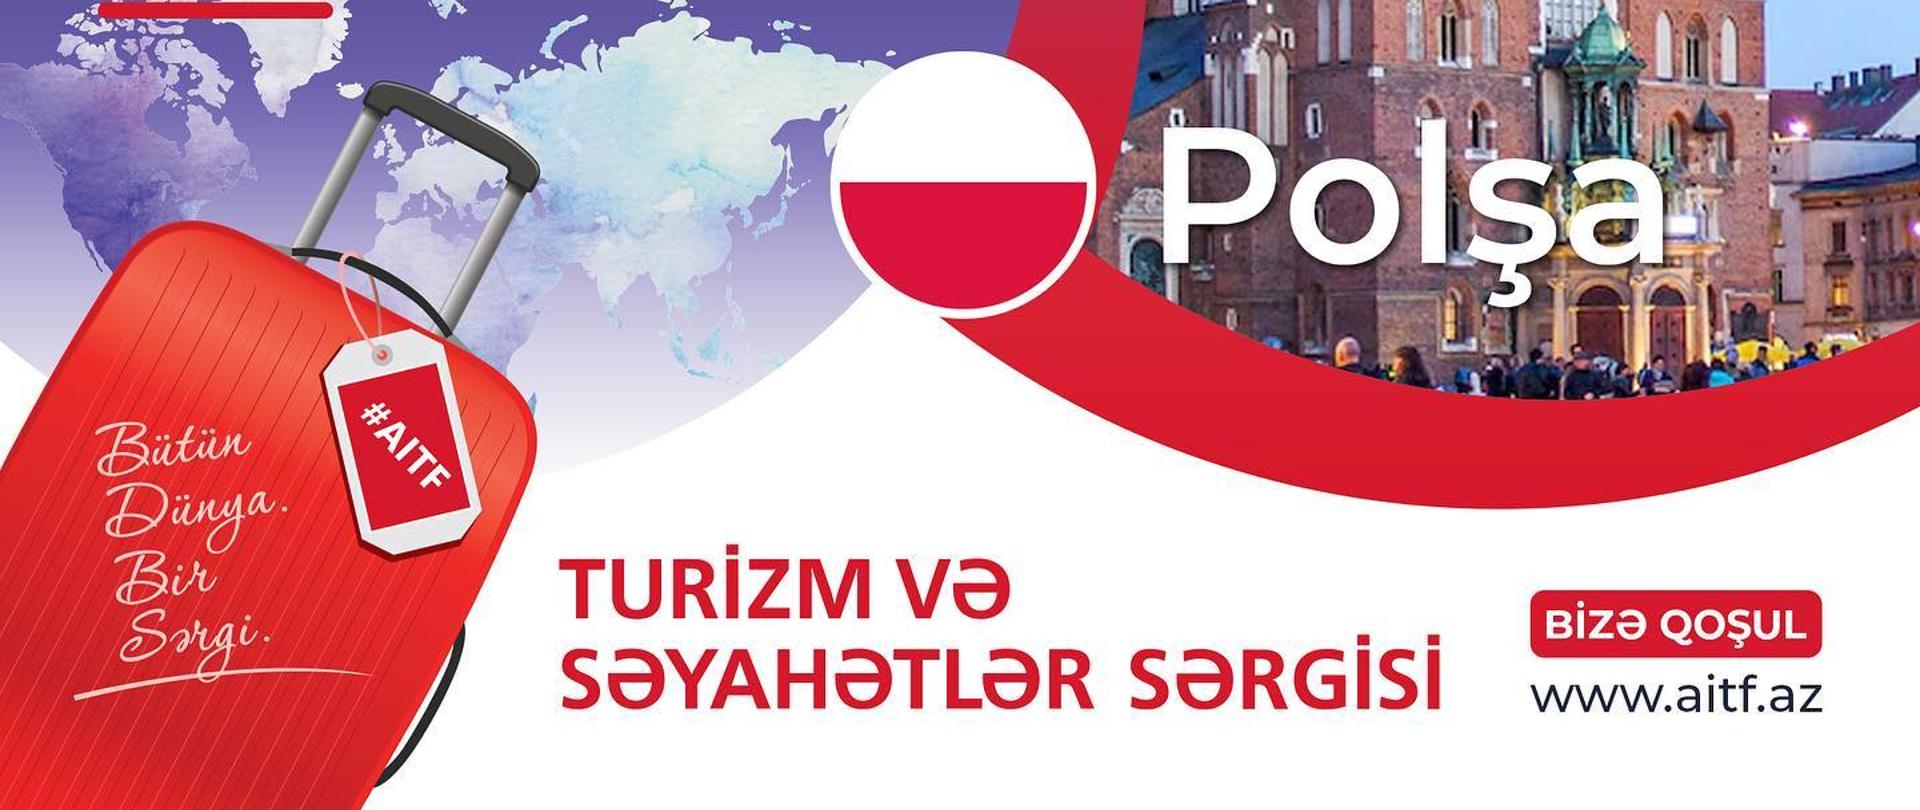 Polskie stoisko na targach turystycznych AITF 2023 (Baku, 4-6 kwietnia 2023 r.)